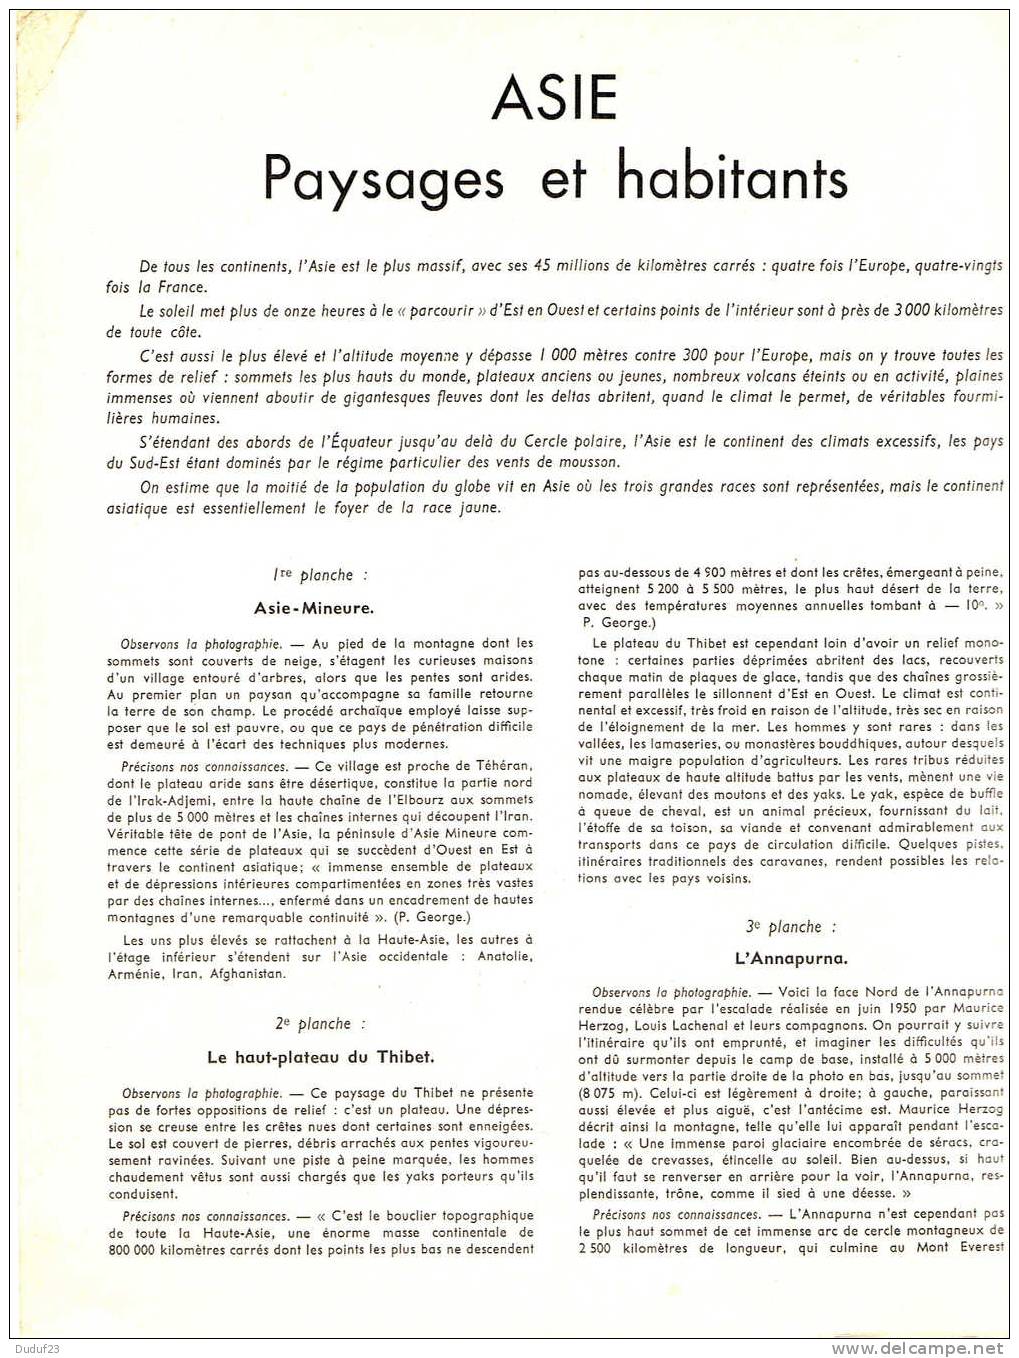 ASIE PAYSAGES ET HABITANTS - DOCUMENTATION PEDAGOGIQUE ROSSIGNOL MONTMORILLON 1957 - Fiches Didactiques